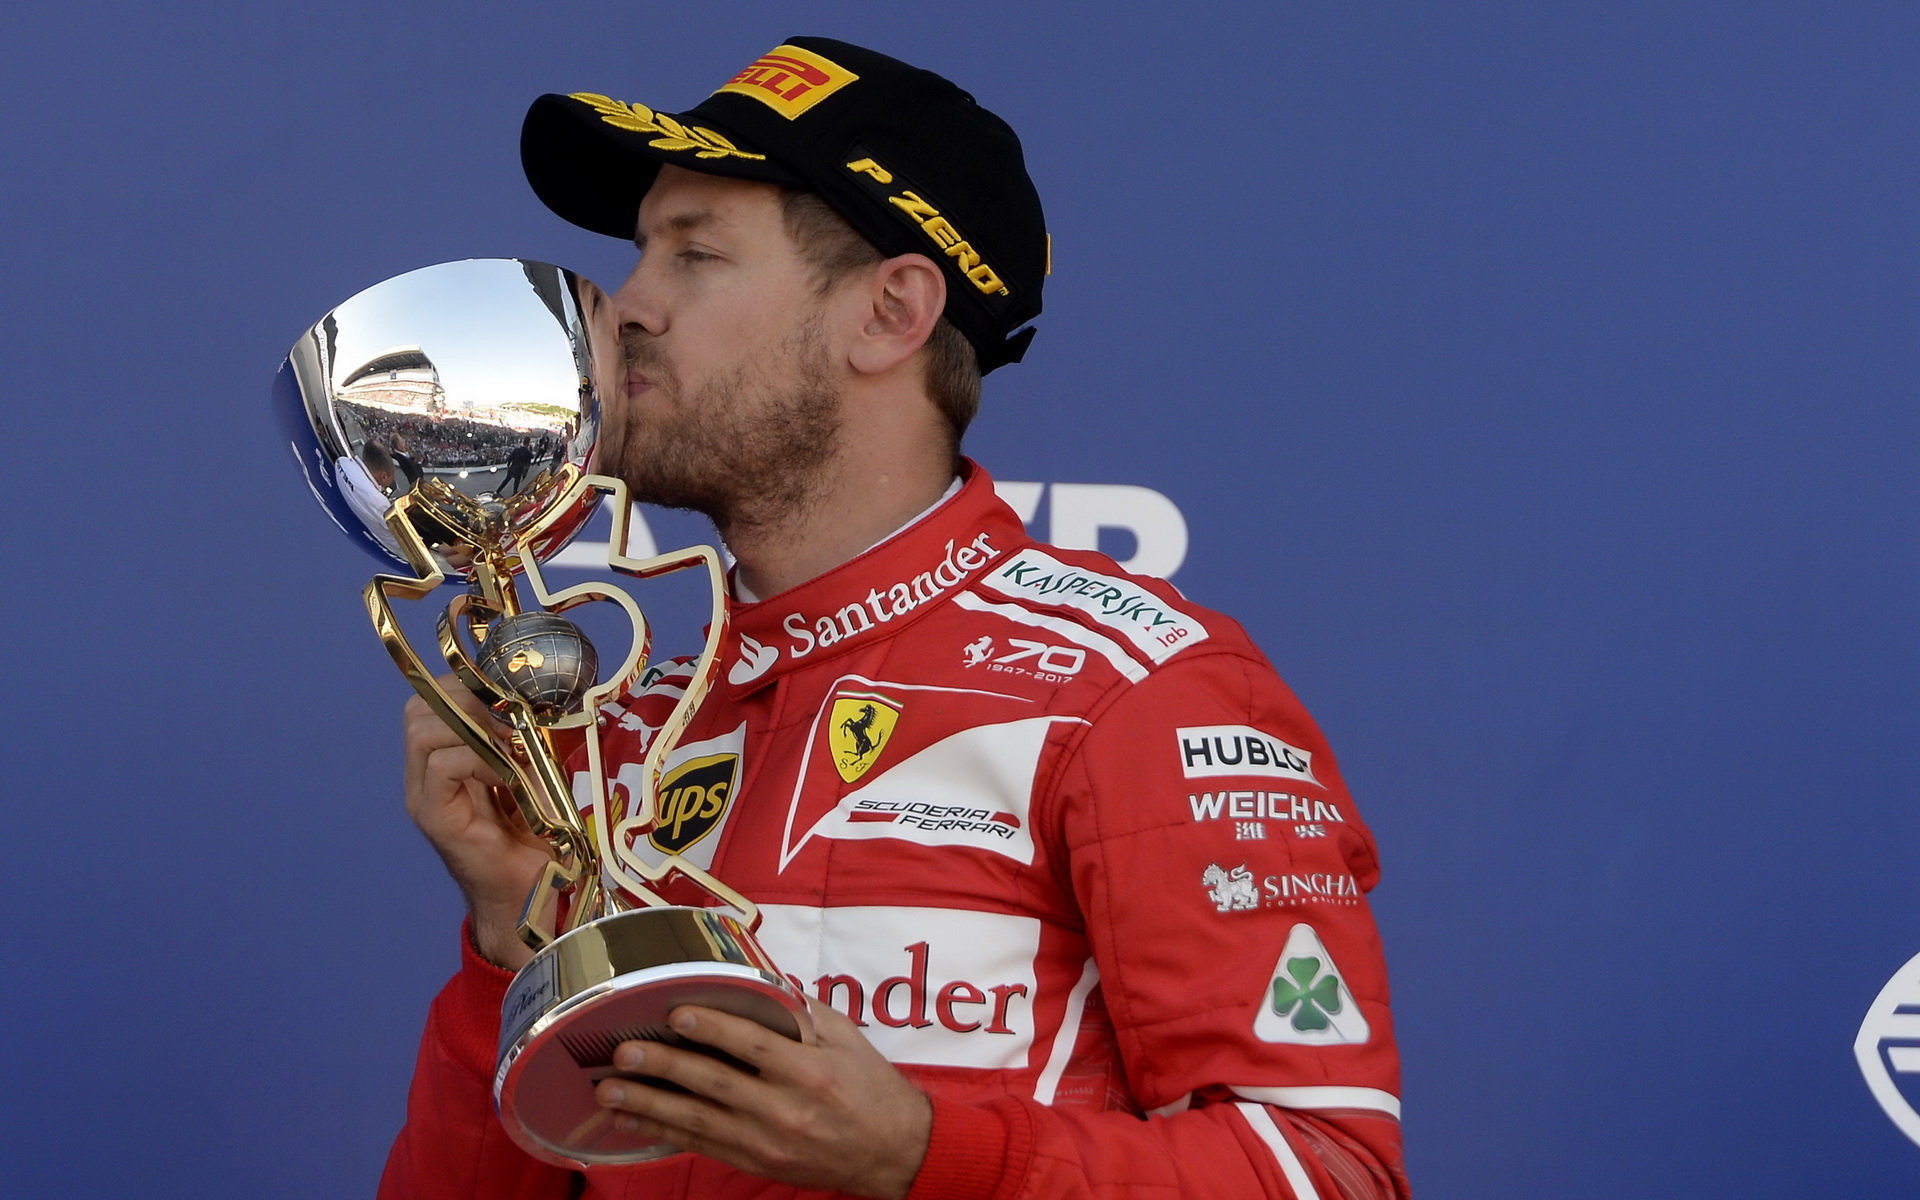 Sebastian Vettel si přeje více soupeřů